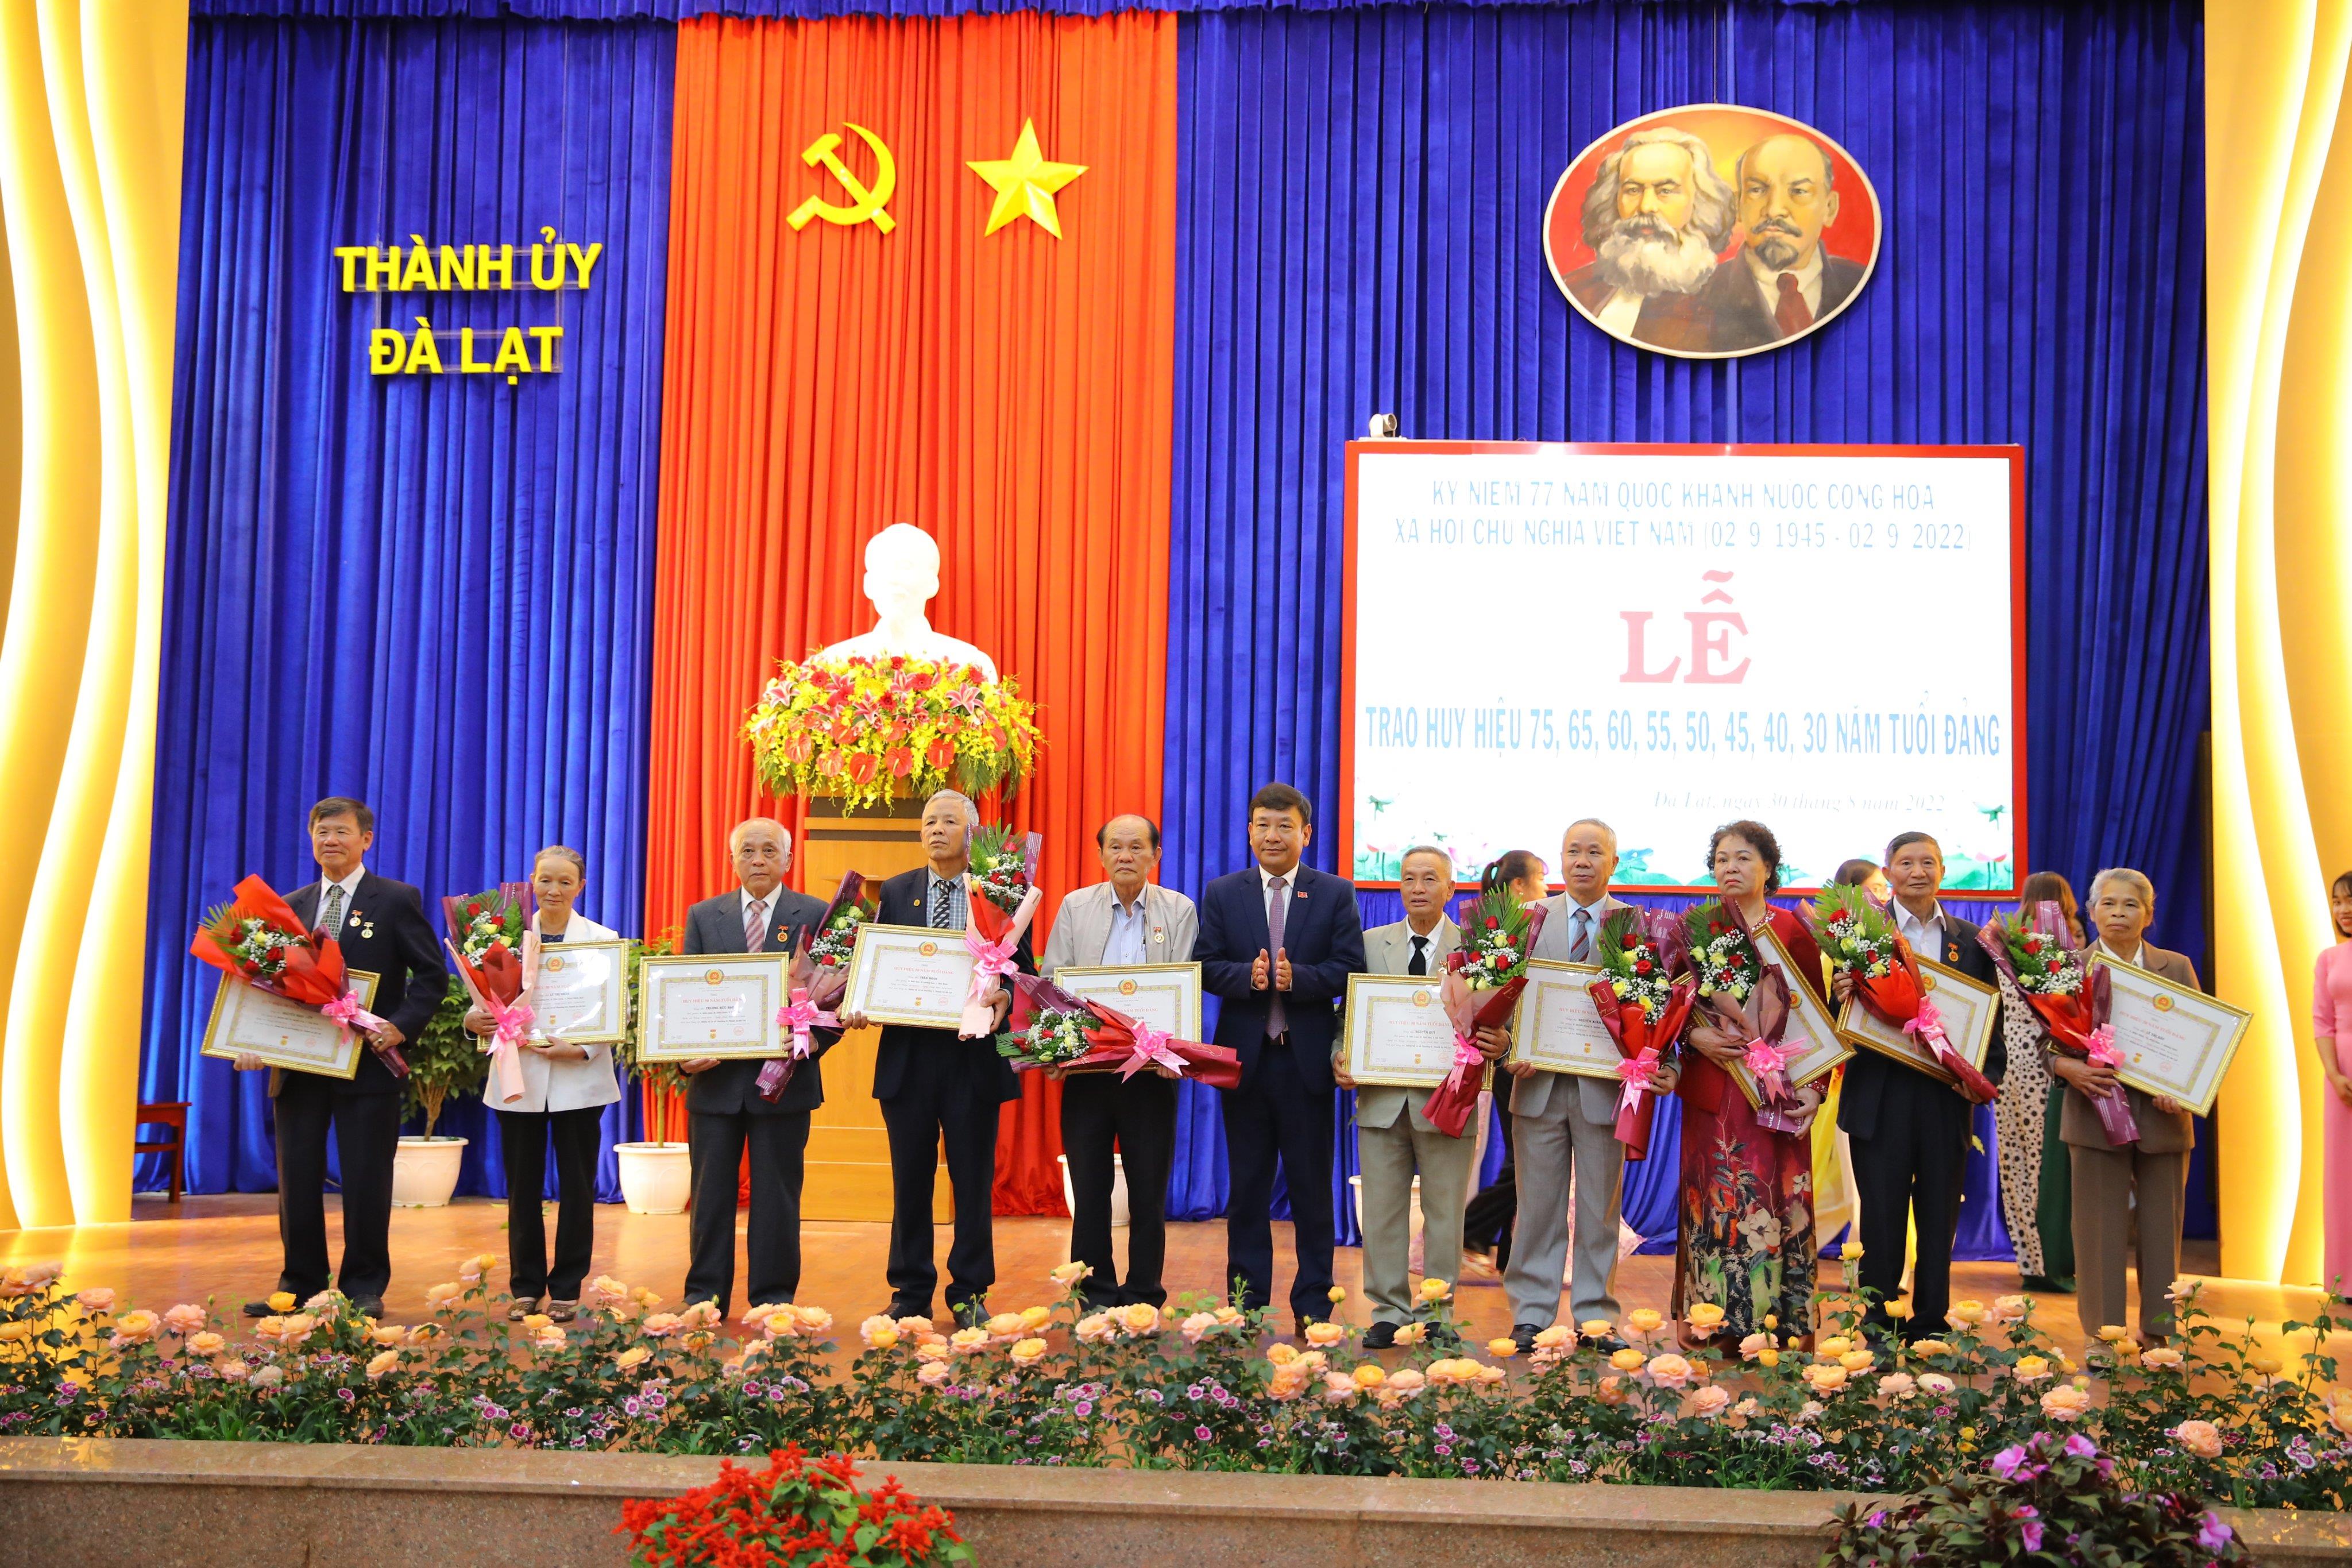 Đồng chí Bùi Thắng - Ủy viên Ban Thường vụ, Trưởng Ban Tuyên giáo Tỉnh ủy trao Huy hiệu 45 tuổi Đảng cho các đảng viên